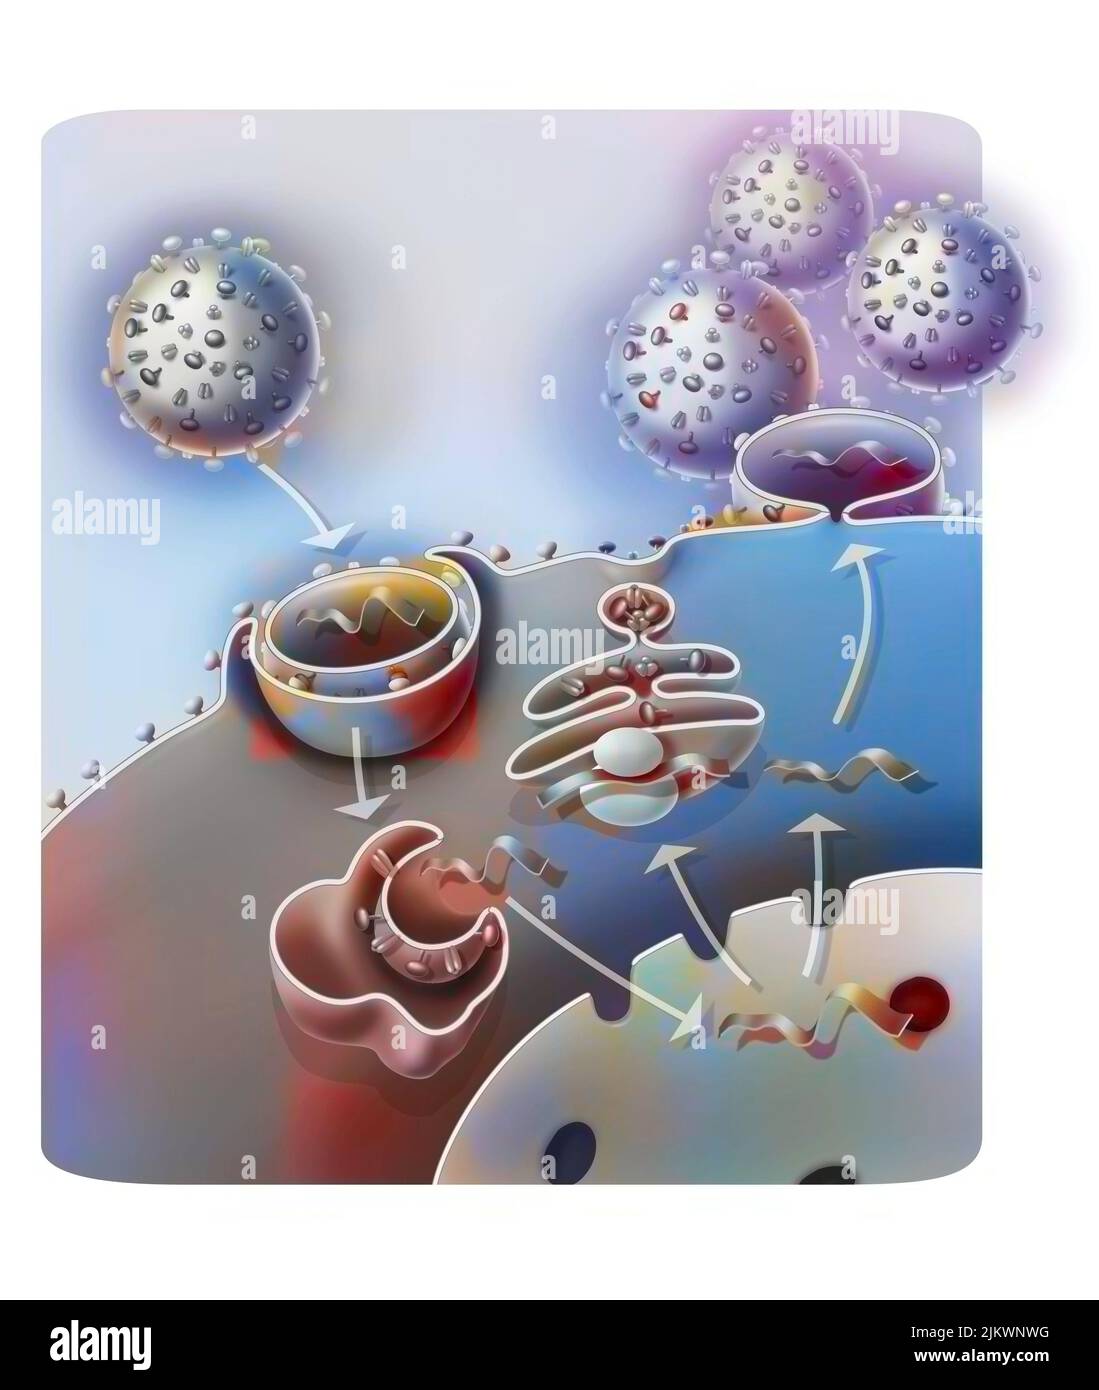 Penetración y replicación del virus H1N1 a través de una célula huésped. Foto de stock